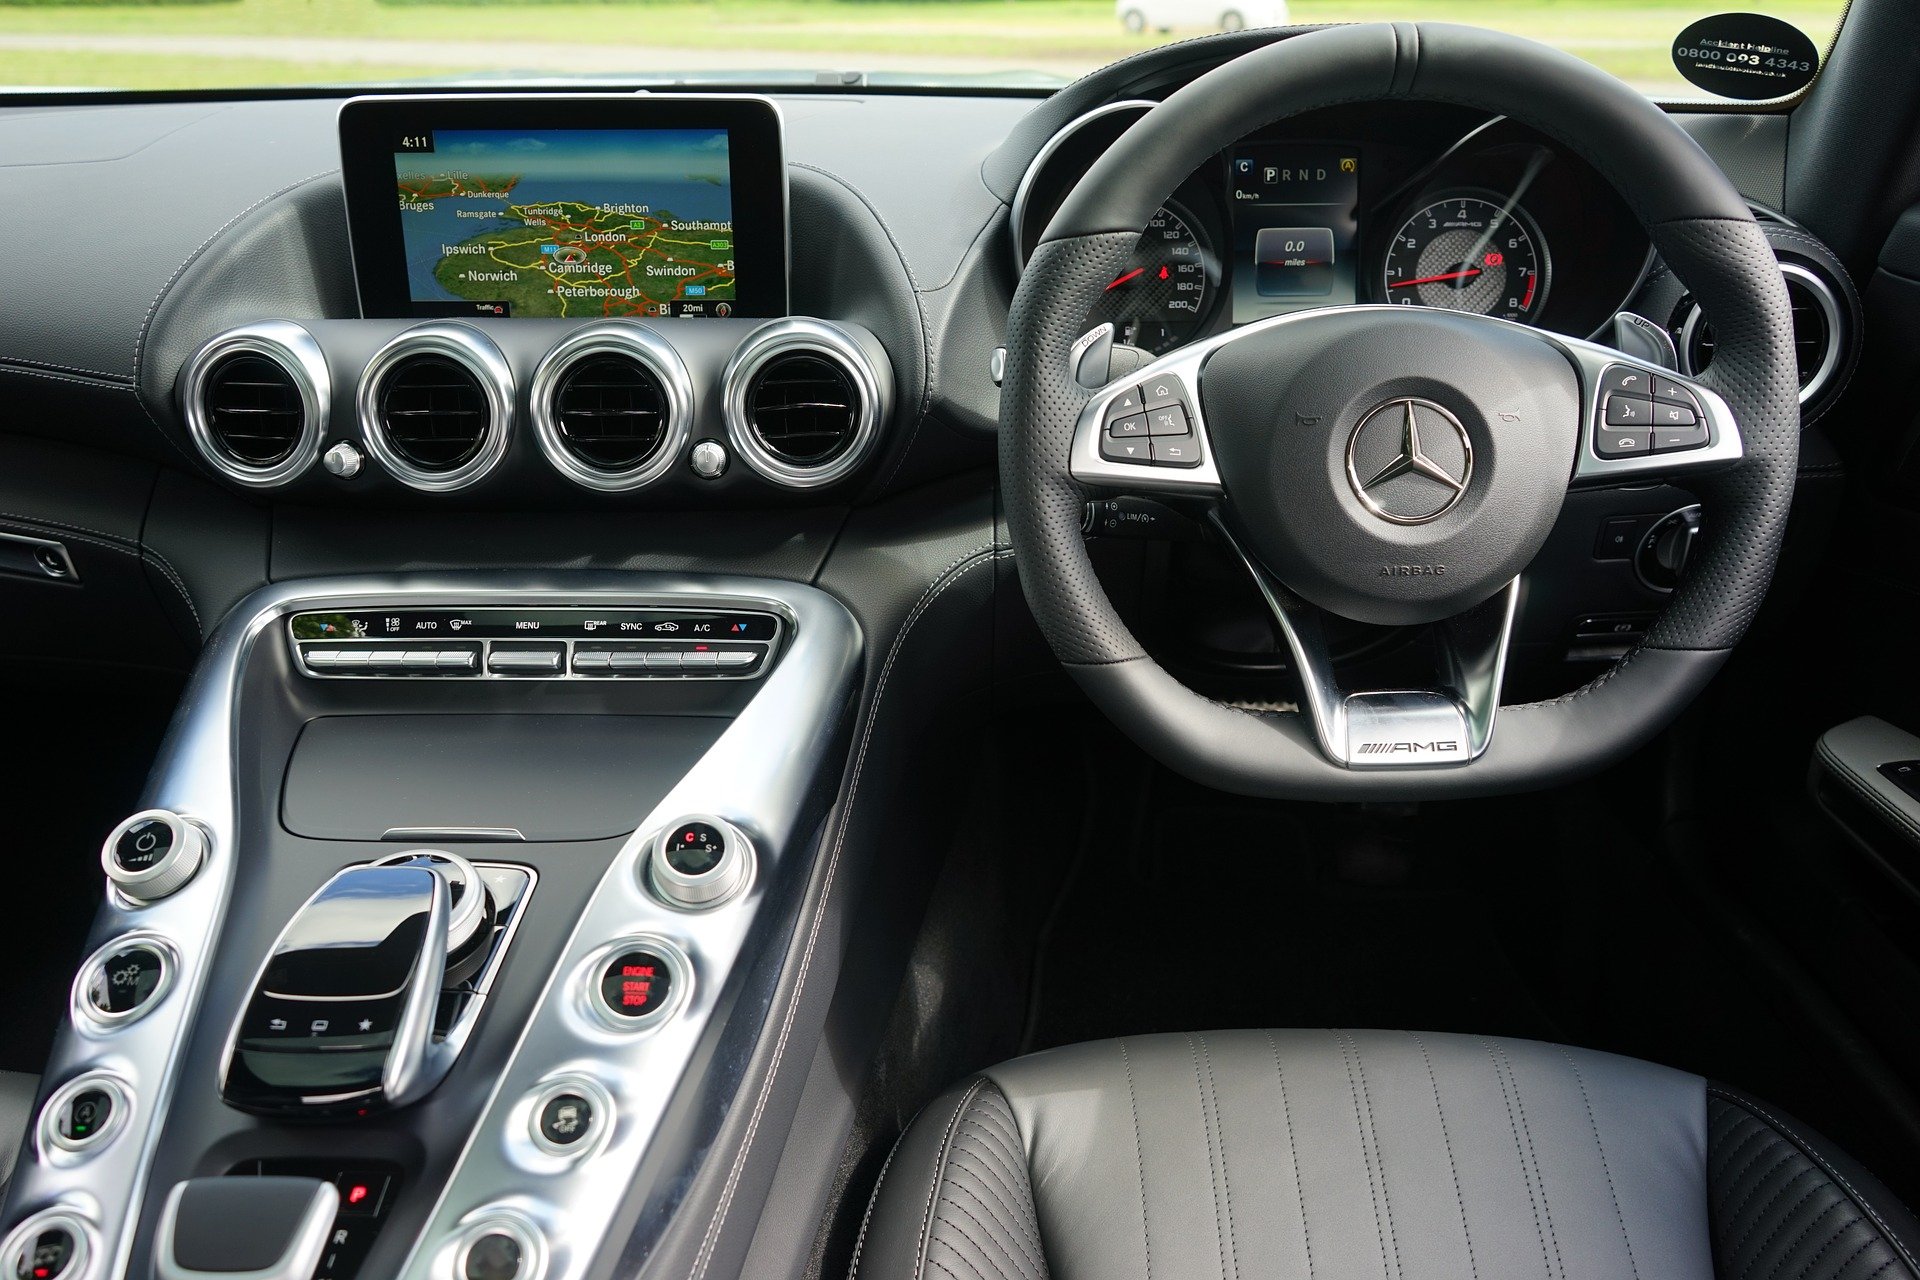 Interior of a Mercedes Benz AMG. | Source: MikesPhotos/Pixabay 